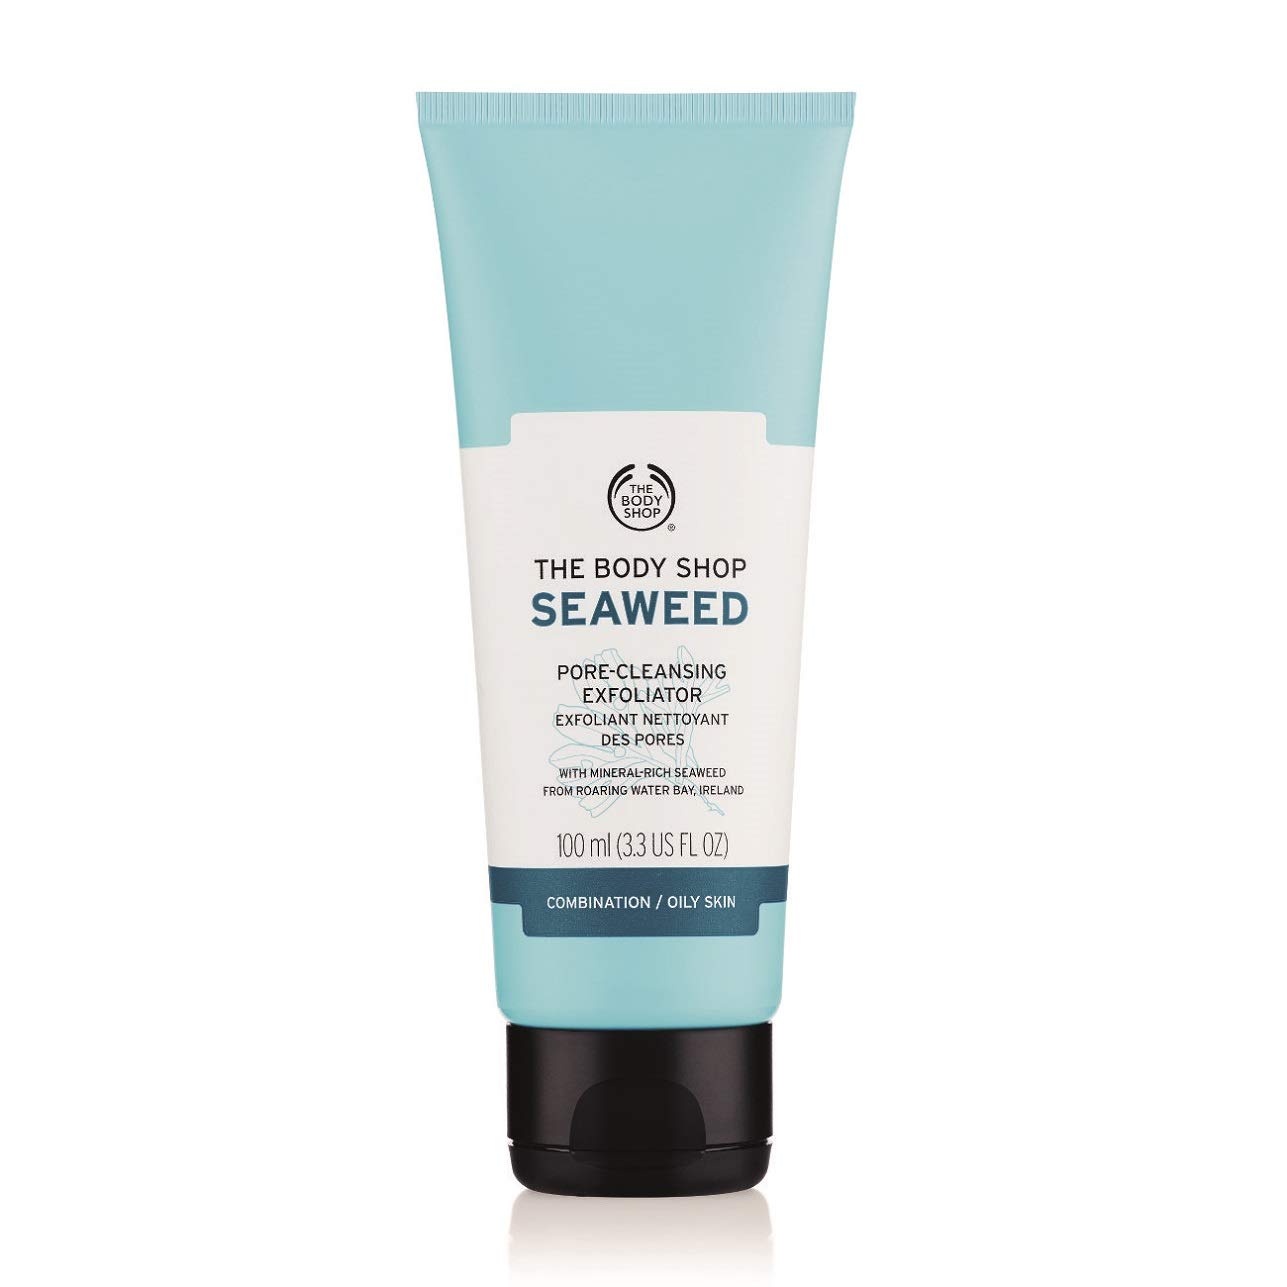 Chăm sóc da ngày Tết-Tẩy tế bào chết THE BODY SHOP Seaweed Pore-Cleansing Facial Exfoliator.